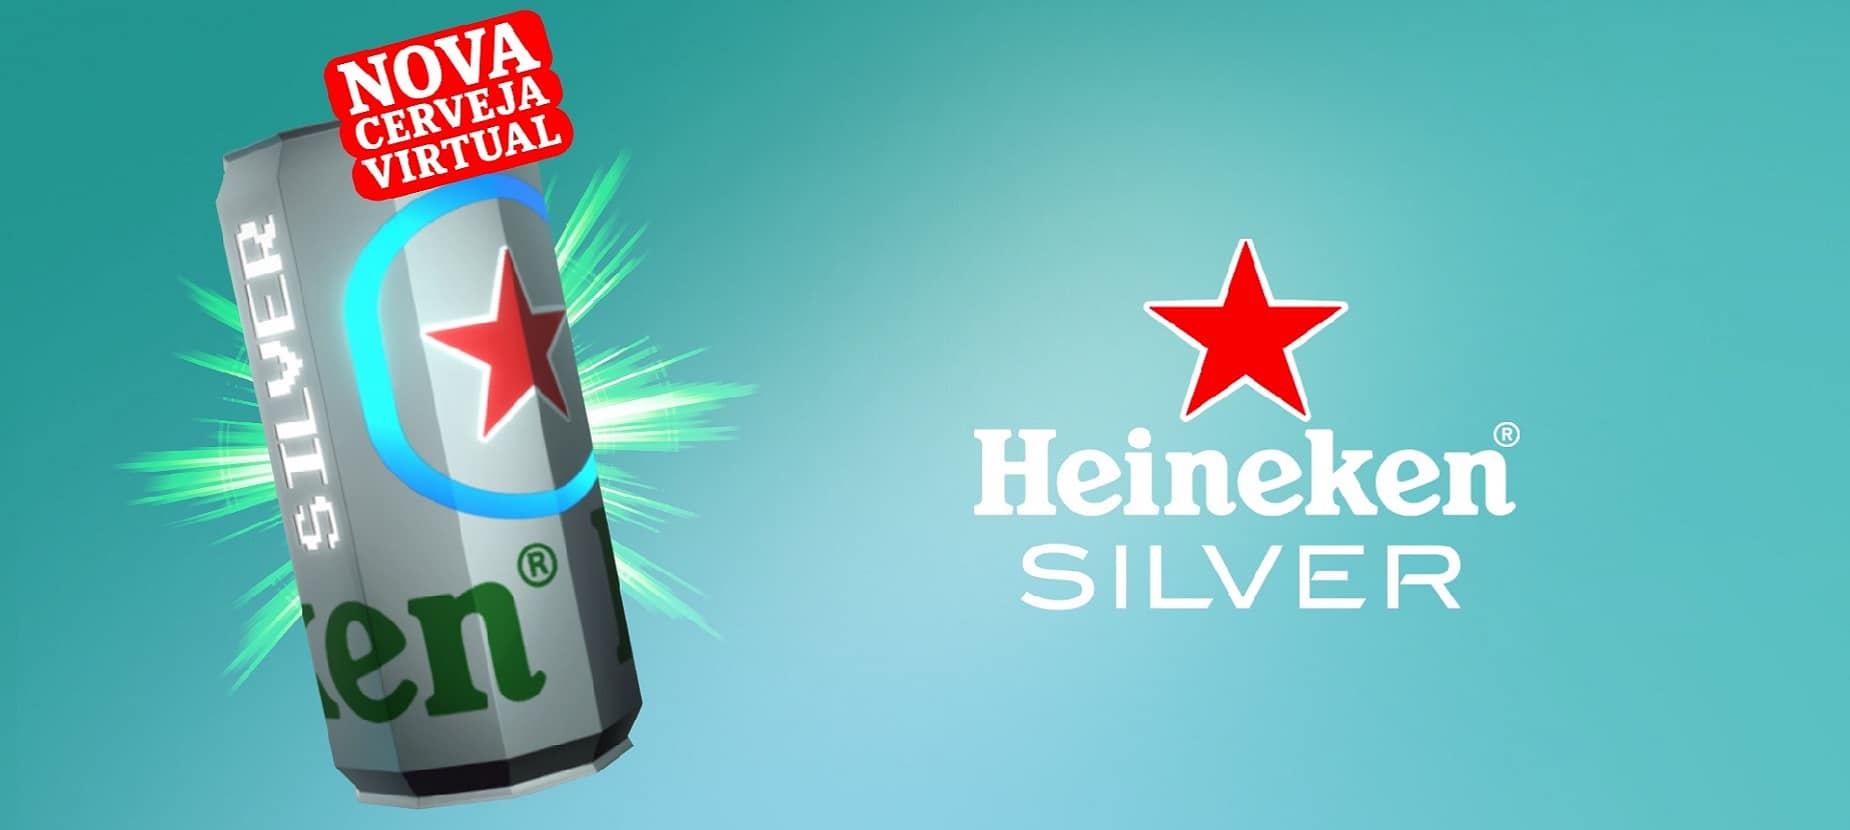 Heineken Silver, é a primeira cerveja virtual, lançada esta quinta-feira pela prestigiada marca, fabricada exclusivamente na sua cervejeira virtual dentro da Decentraland, uma plataforma digital imersiva.